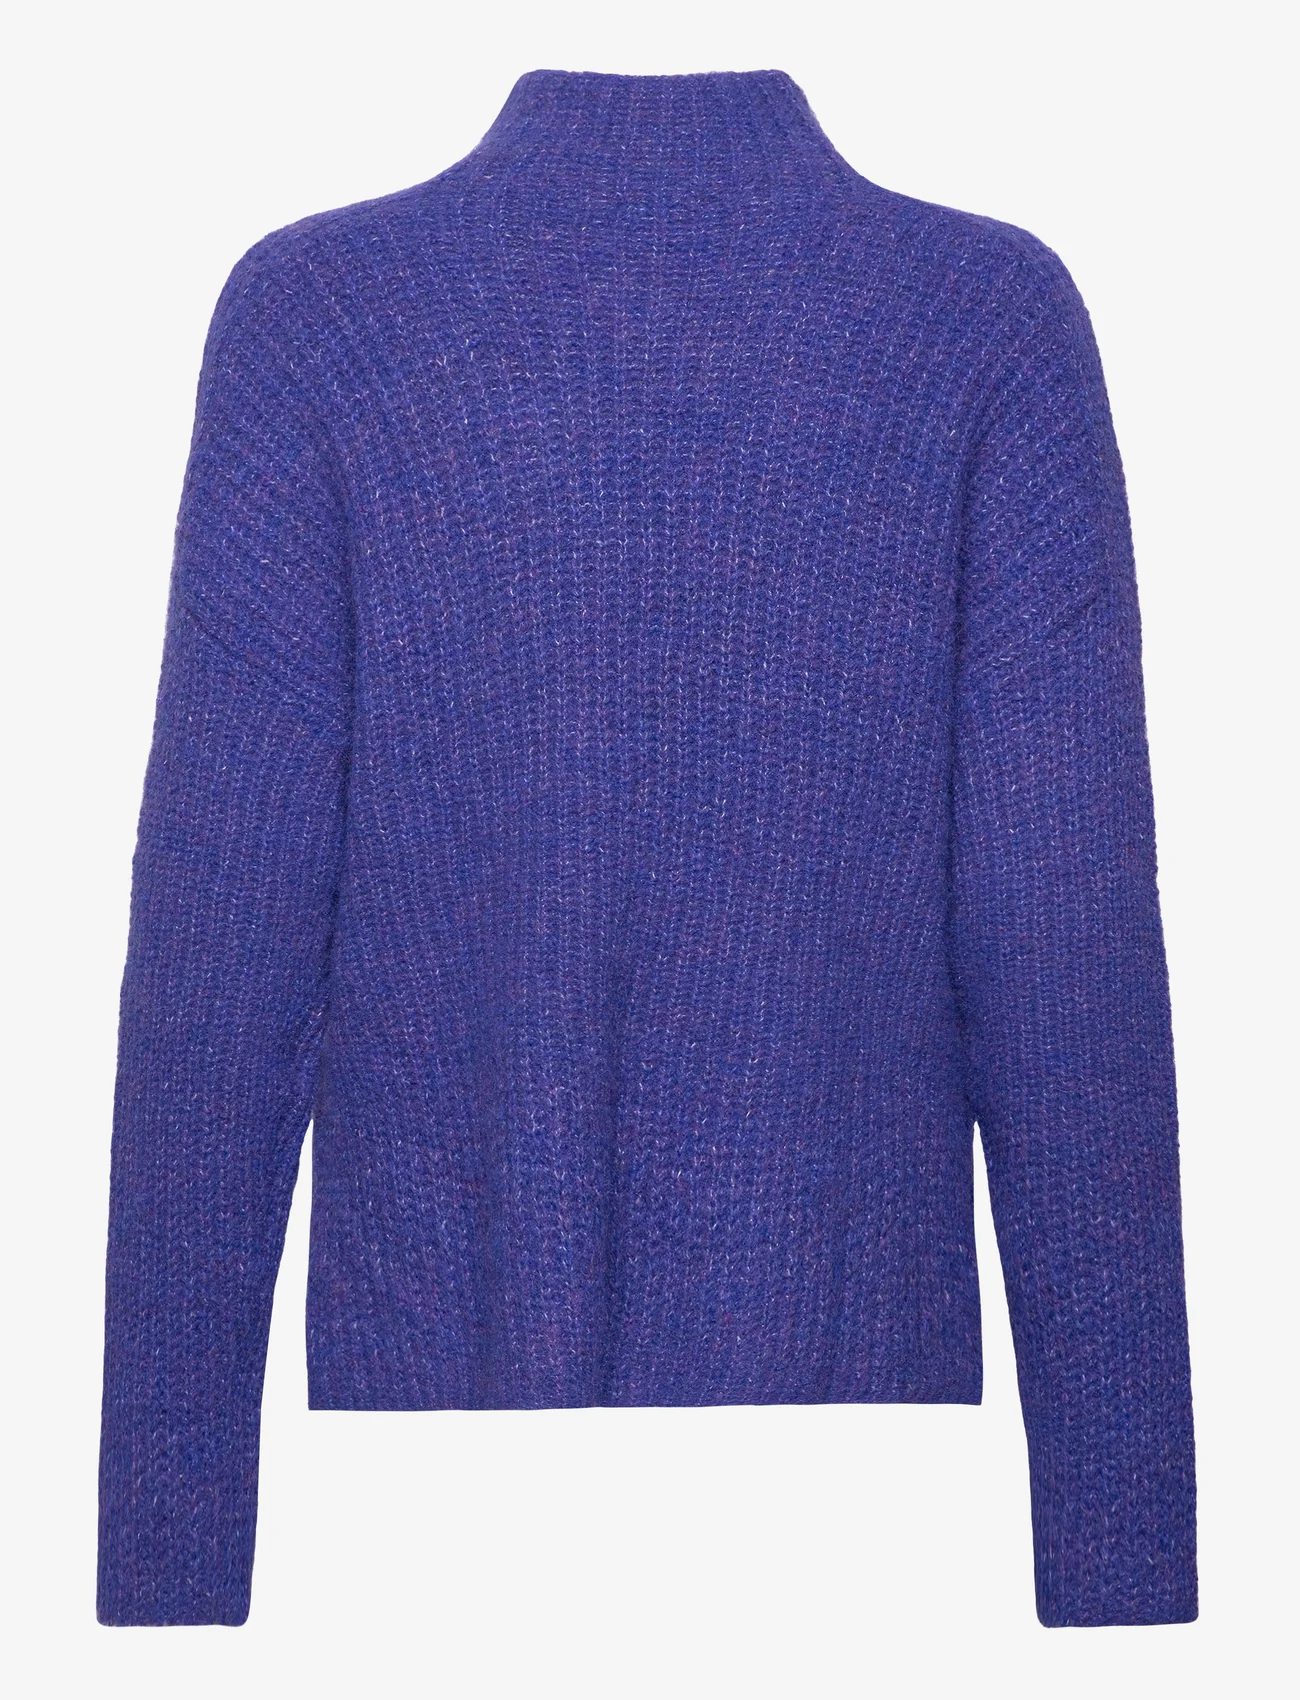 Tom Tailor - knit pullover mock-neck - jumpers - crest blue melange - 1